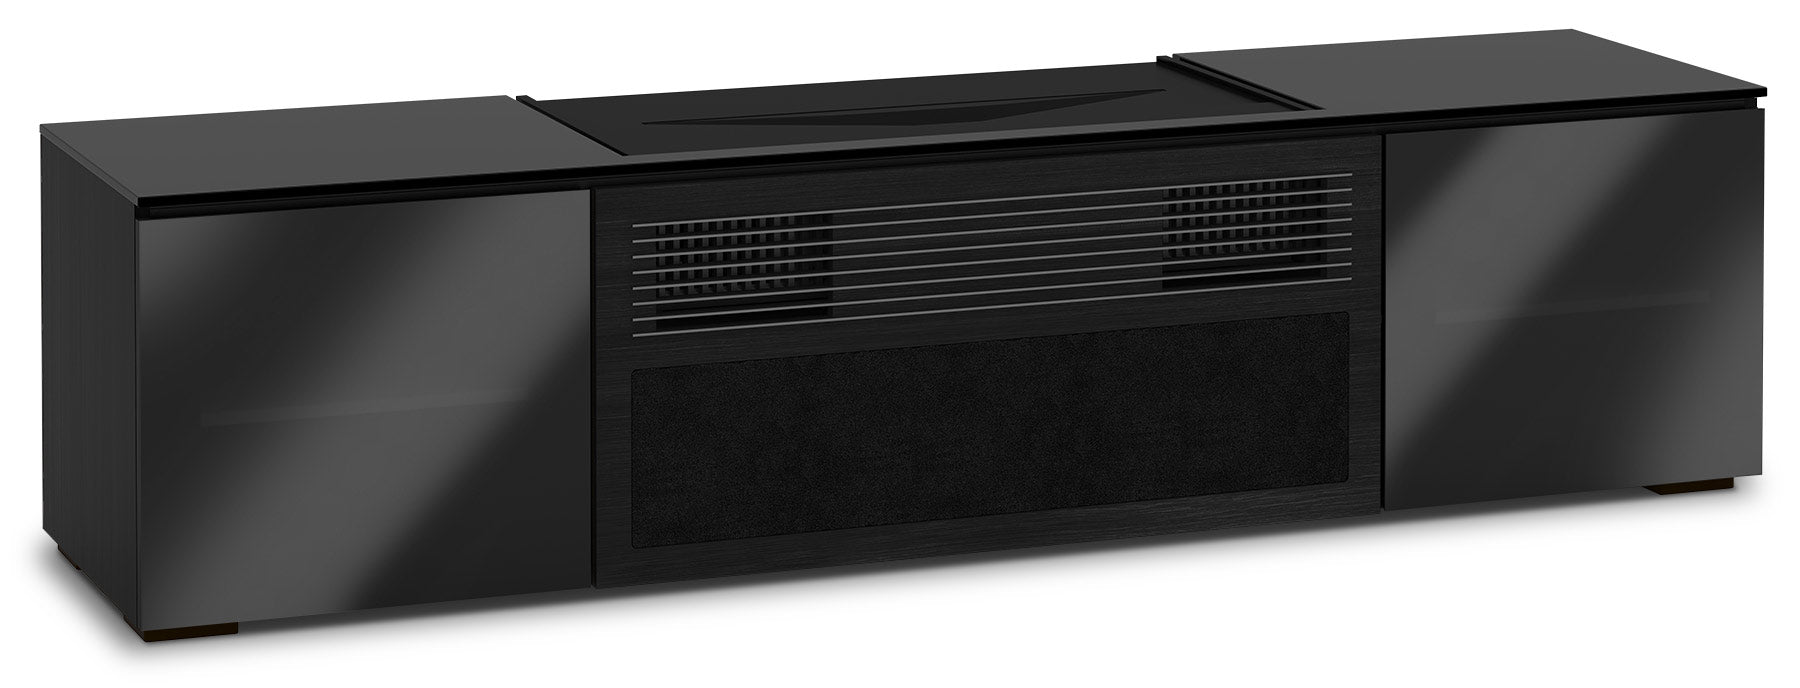 Salamander Designs Sony VPL-VZ1000ES UST Projector Cabinet - Dreamedia AV